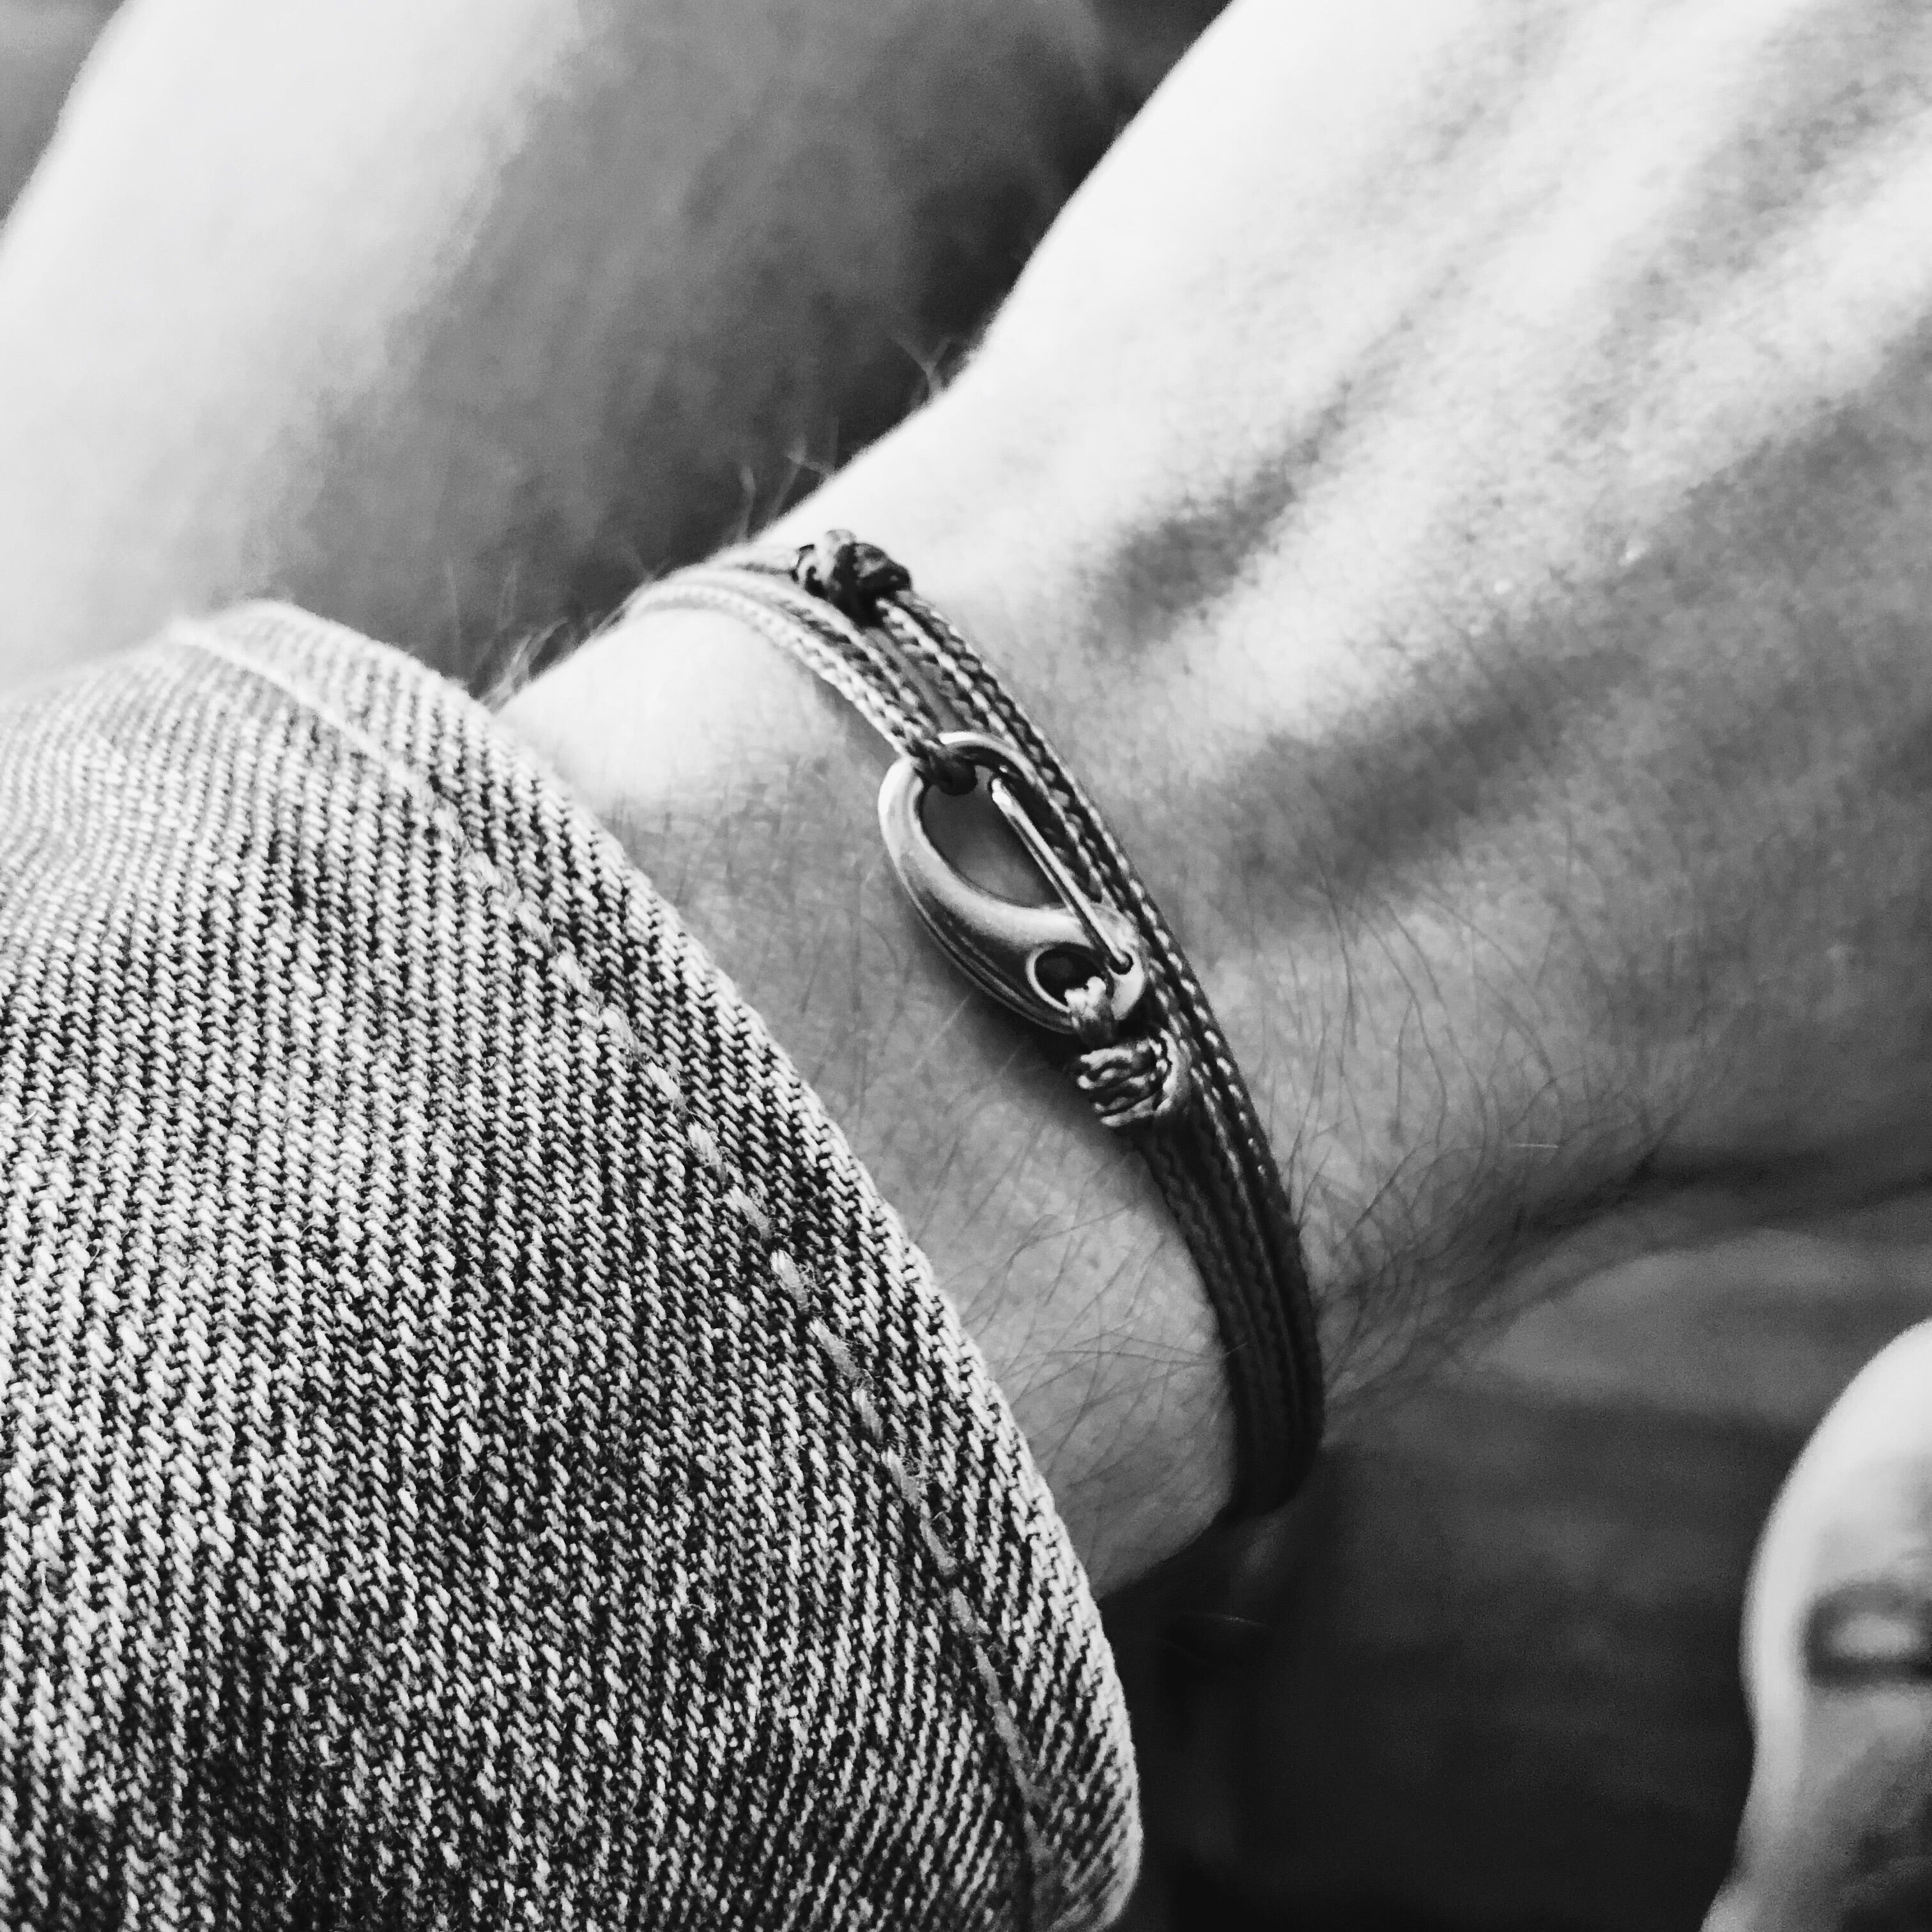 Mens | Micro Cord Adjustable Bracelet in Brown